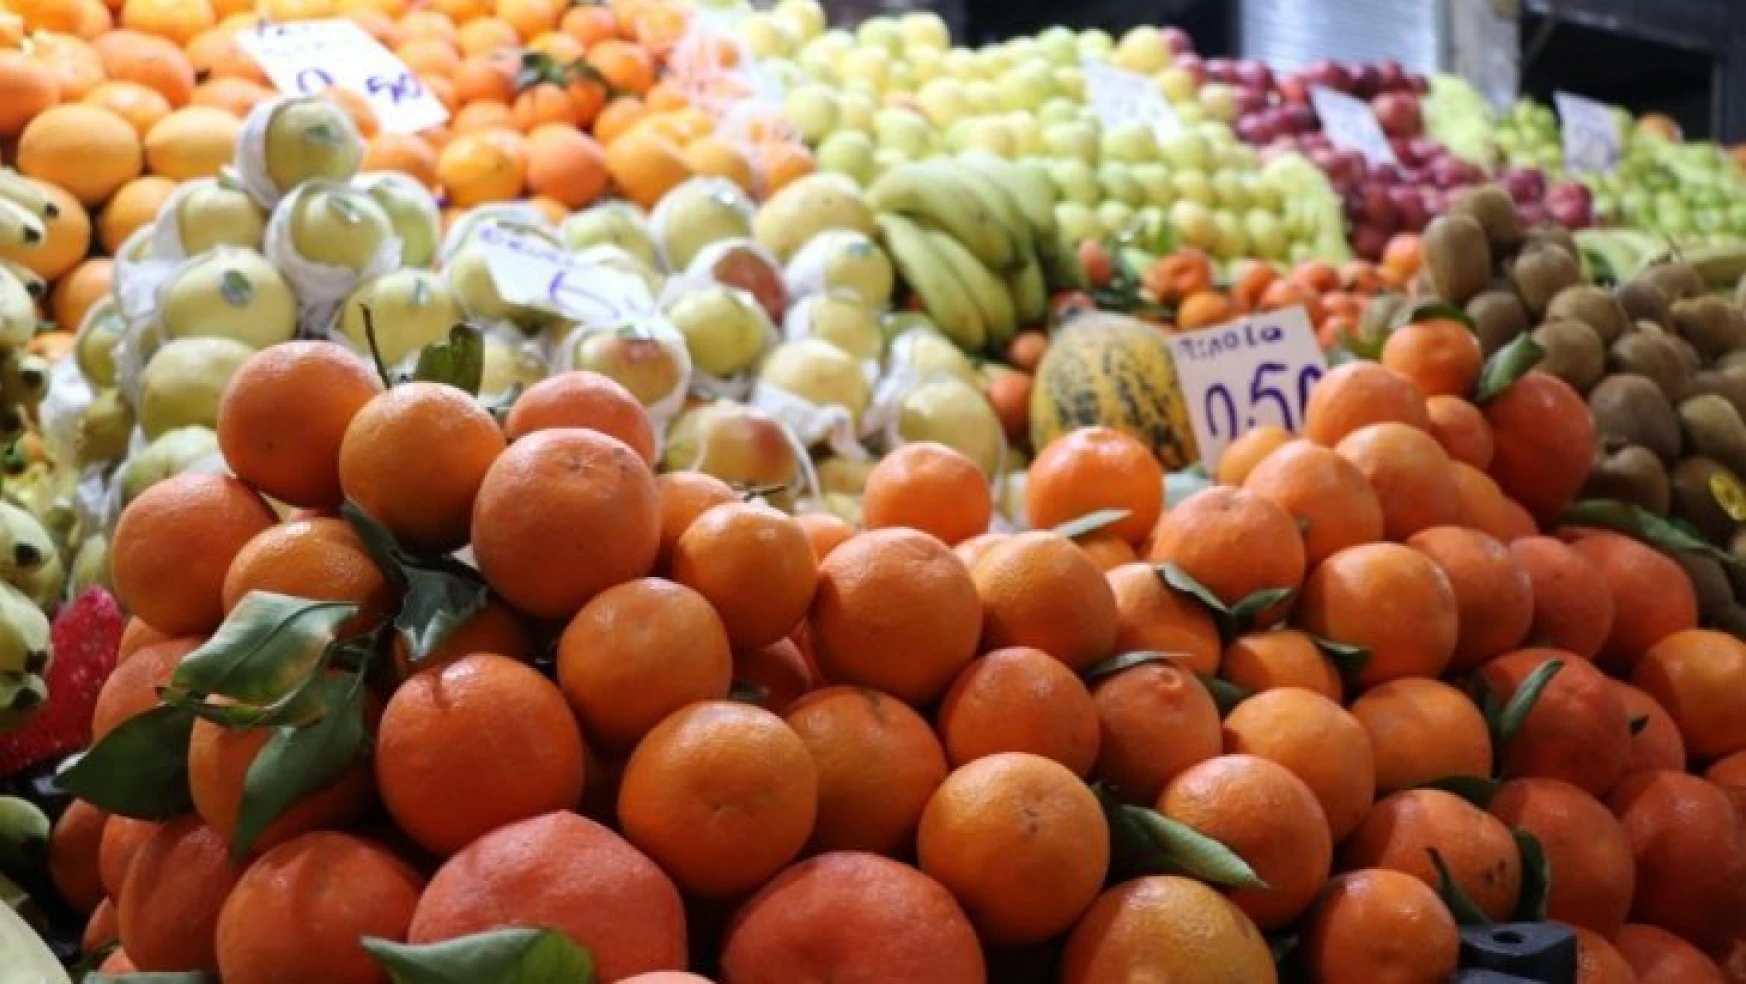 Malatya'da patlıcan fiyatı yükseldi, portakal fiyatı düştü